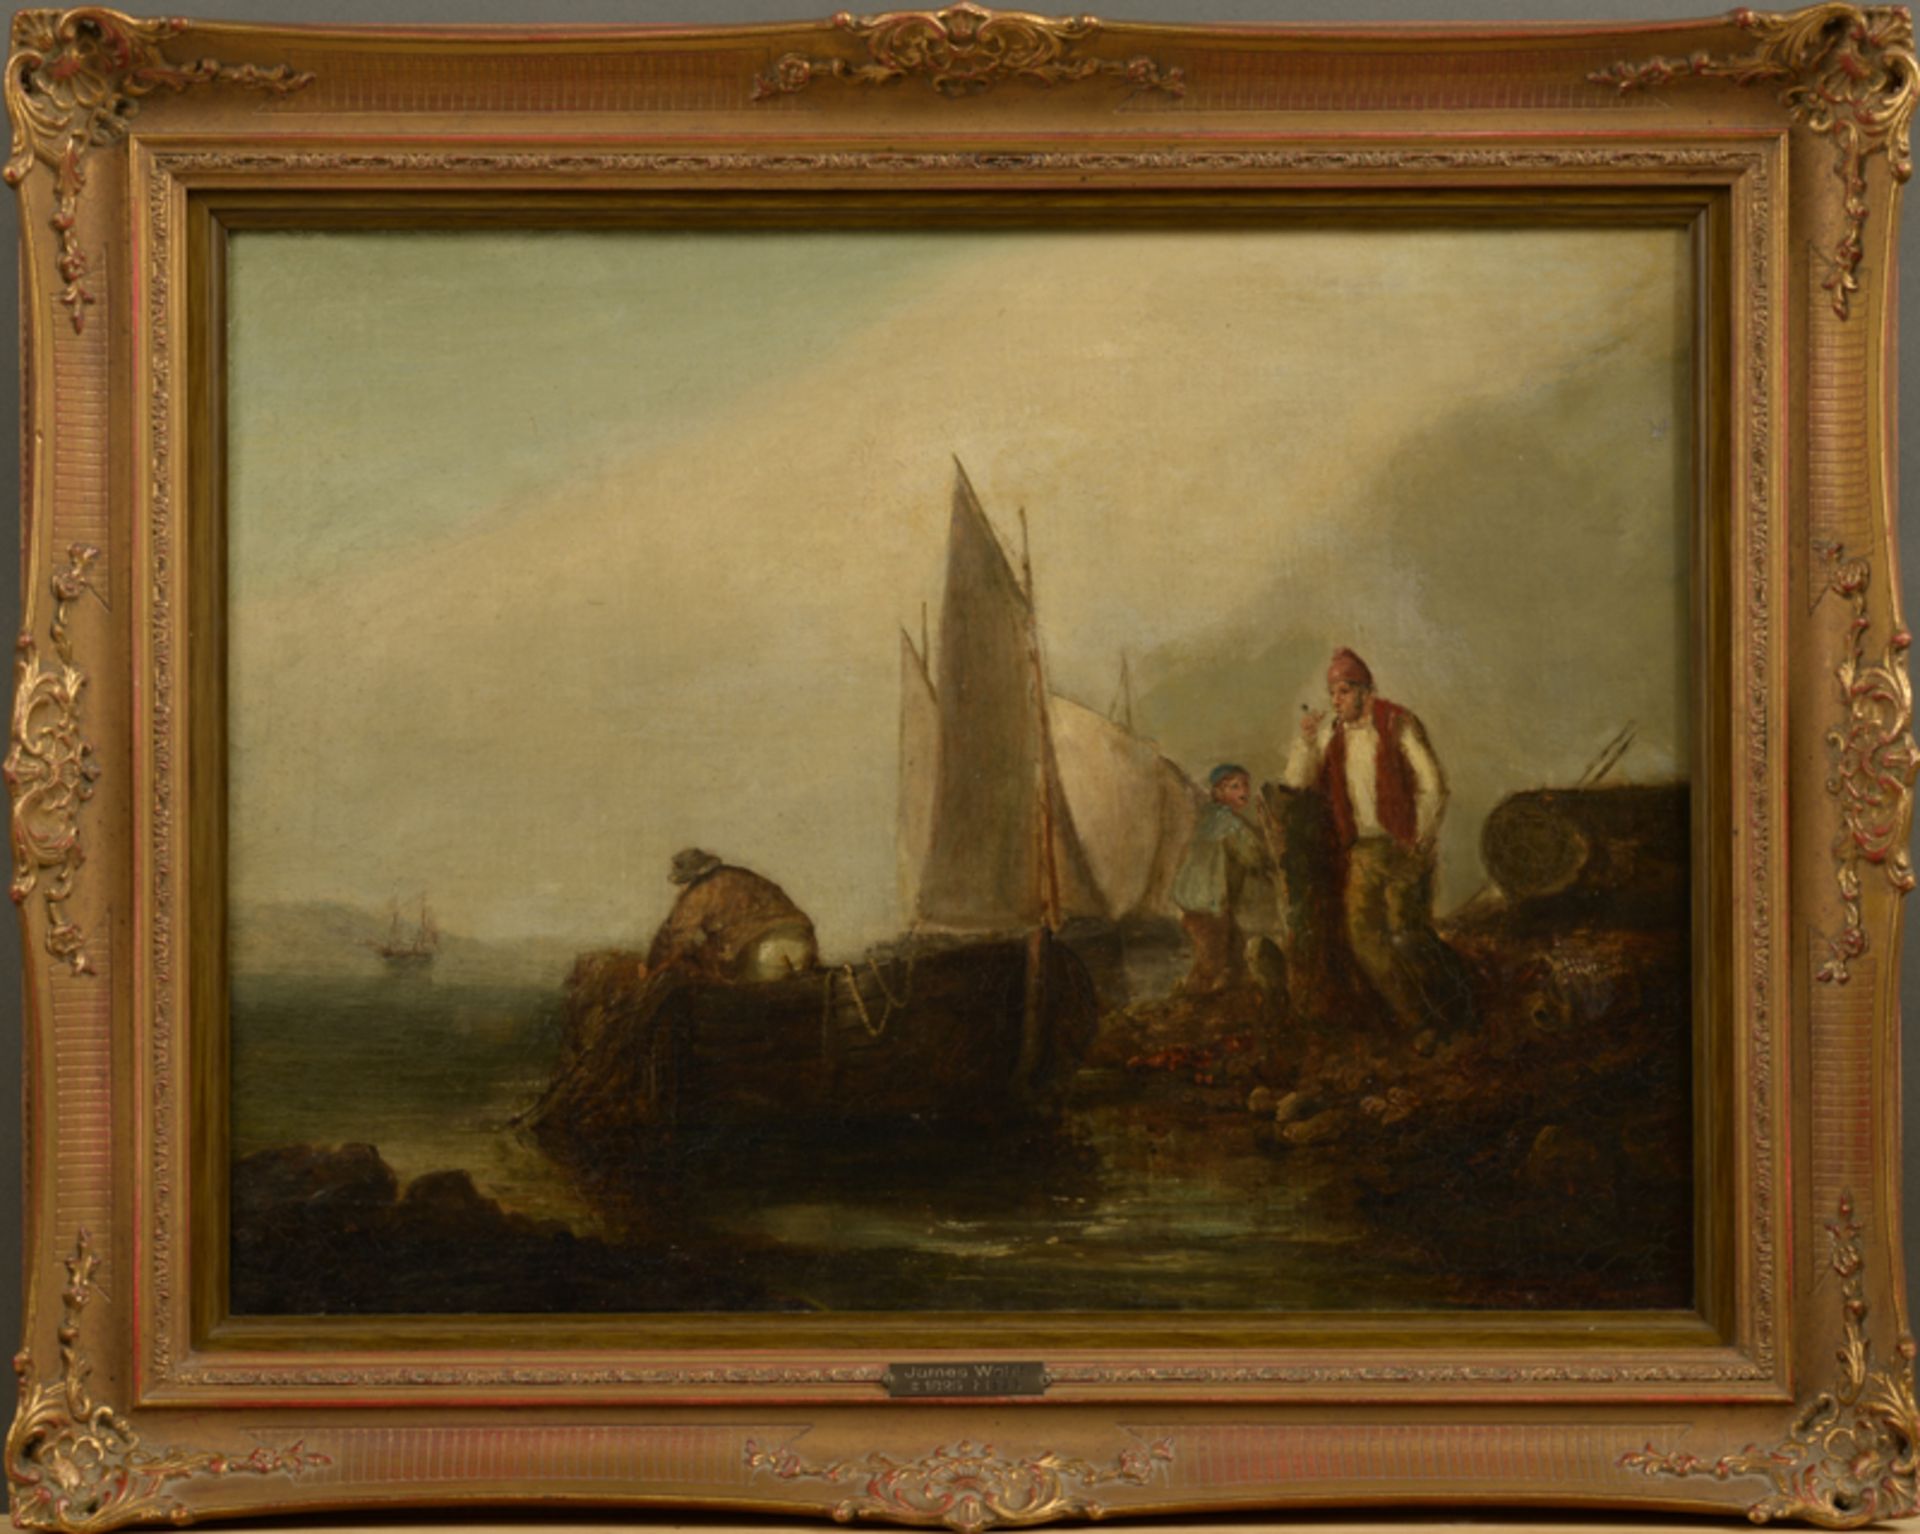 James Webb (1825 - 1895) - Öl auf Leinwand, "Fischer im Boot seine Netze einholend, am Ufer ein Mann